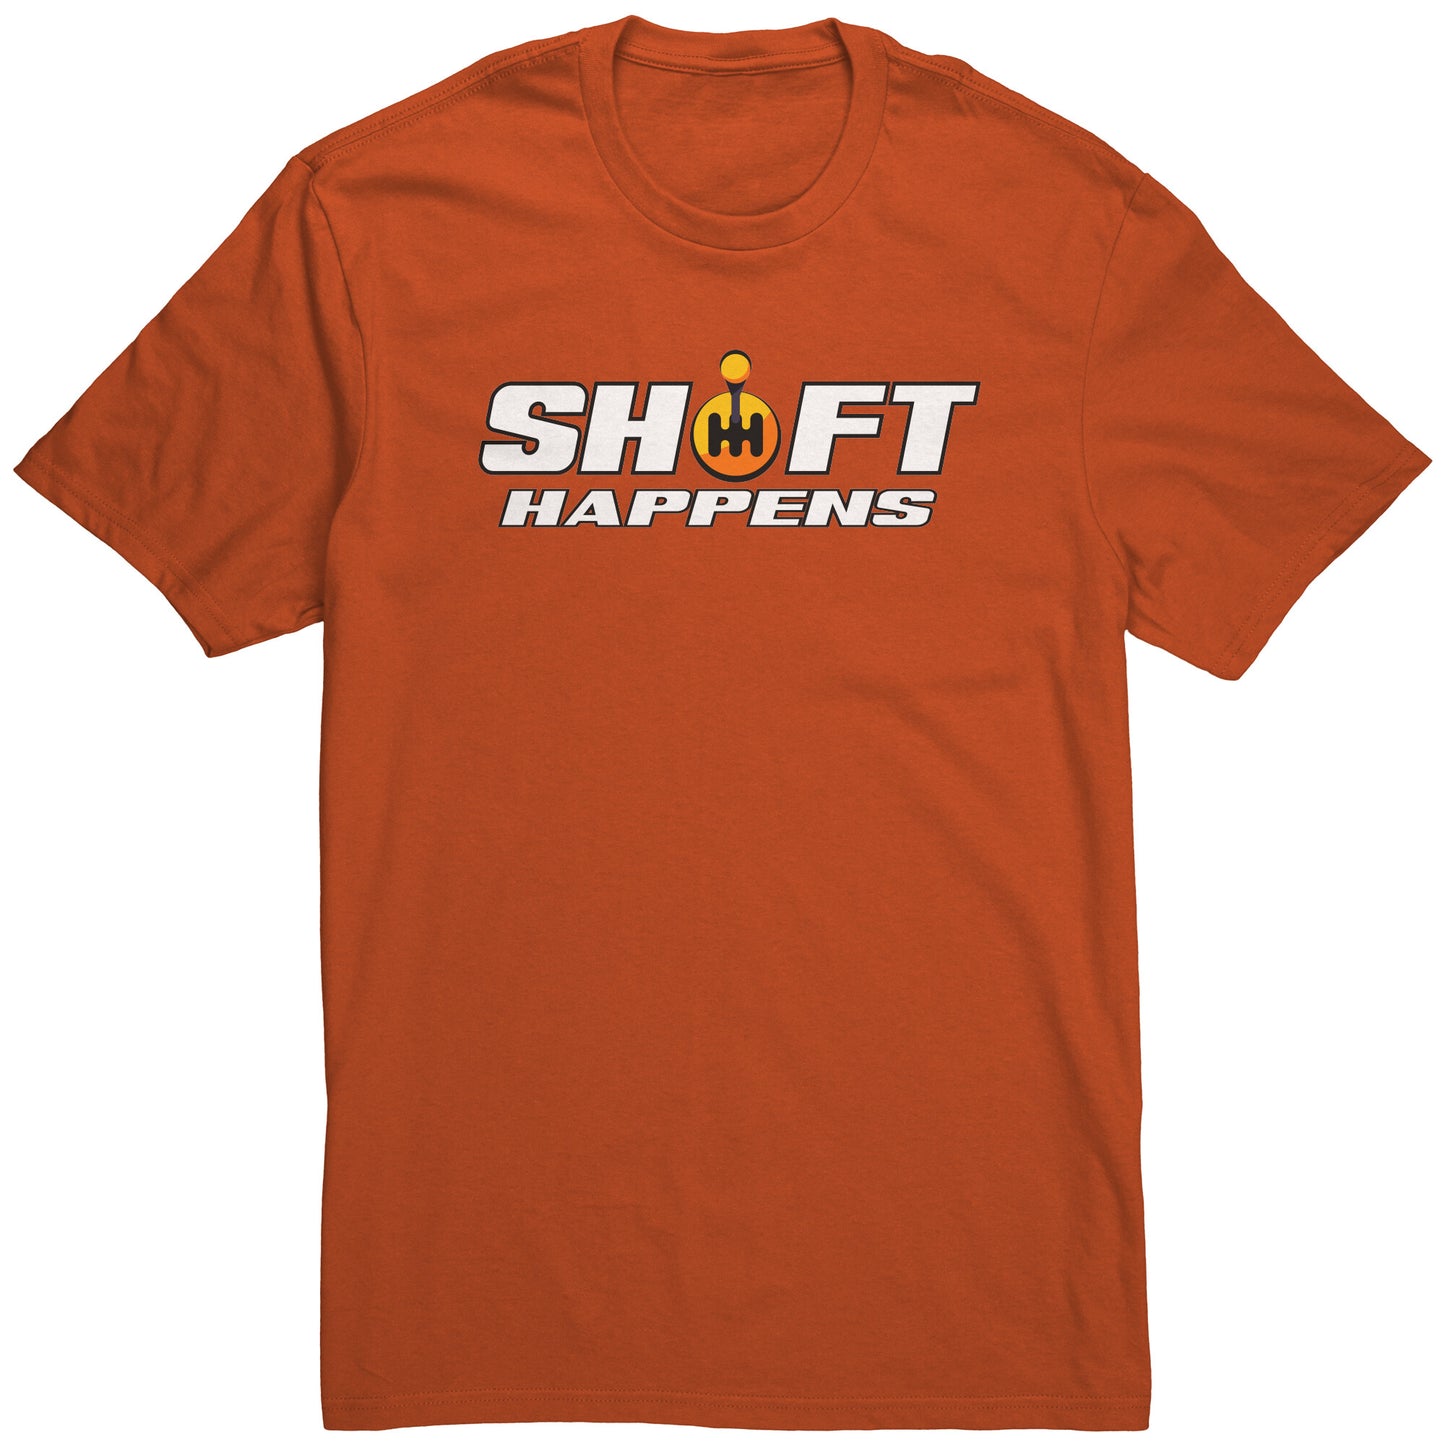 SHIFT HAPPENS MEN'S T-SHIRT